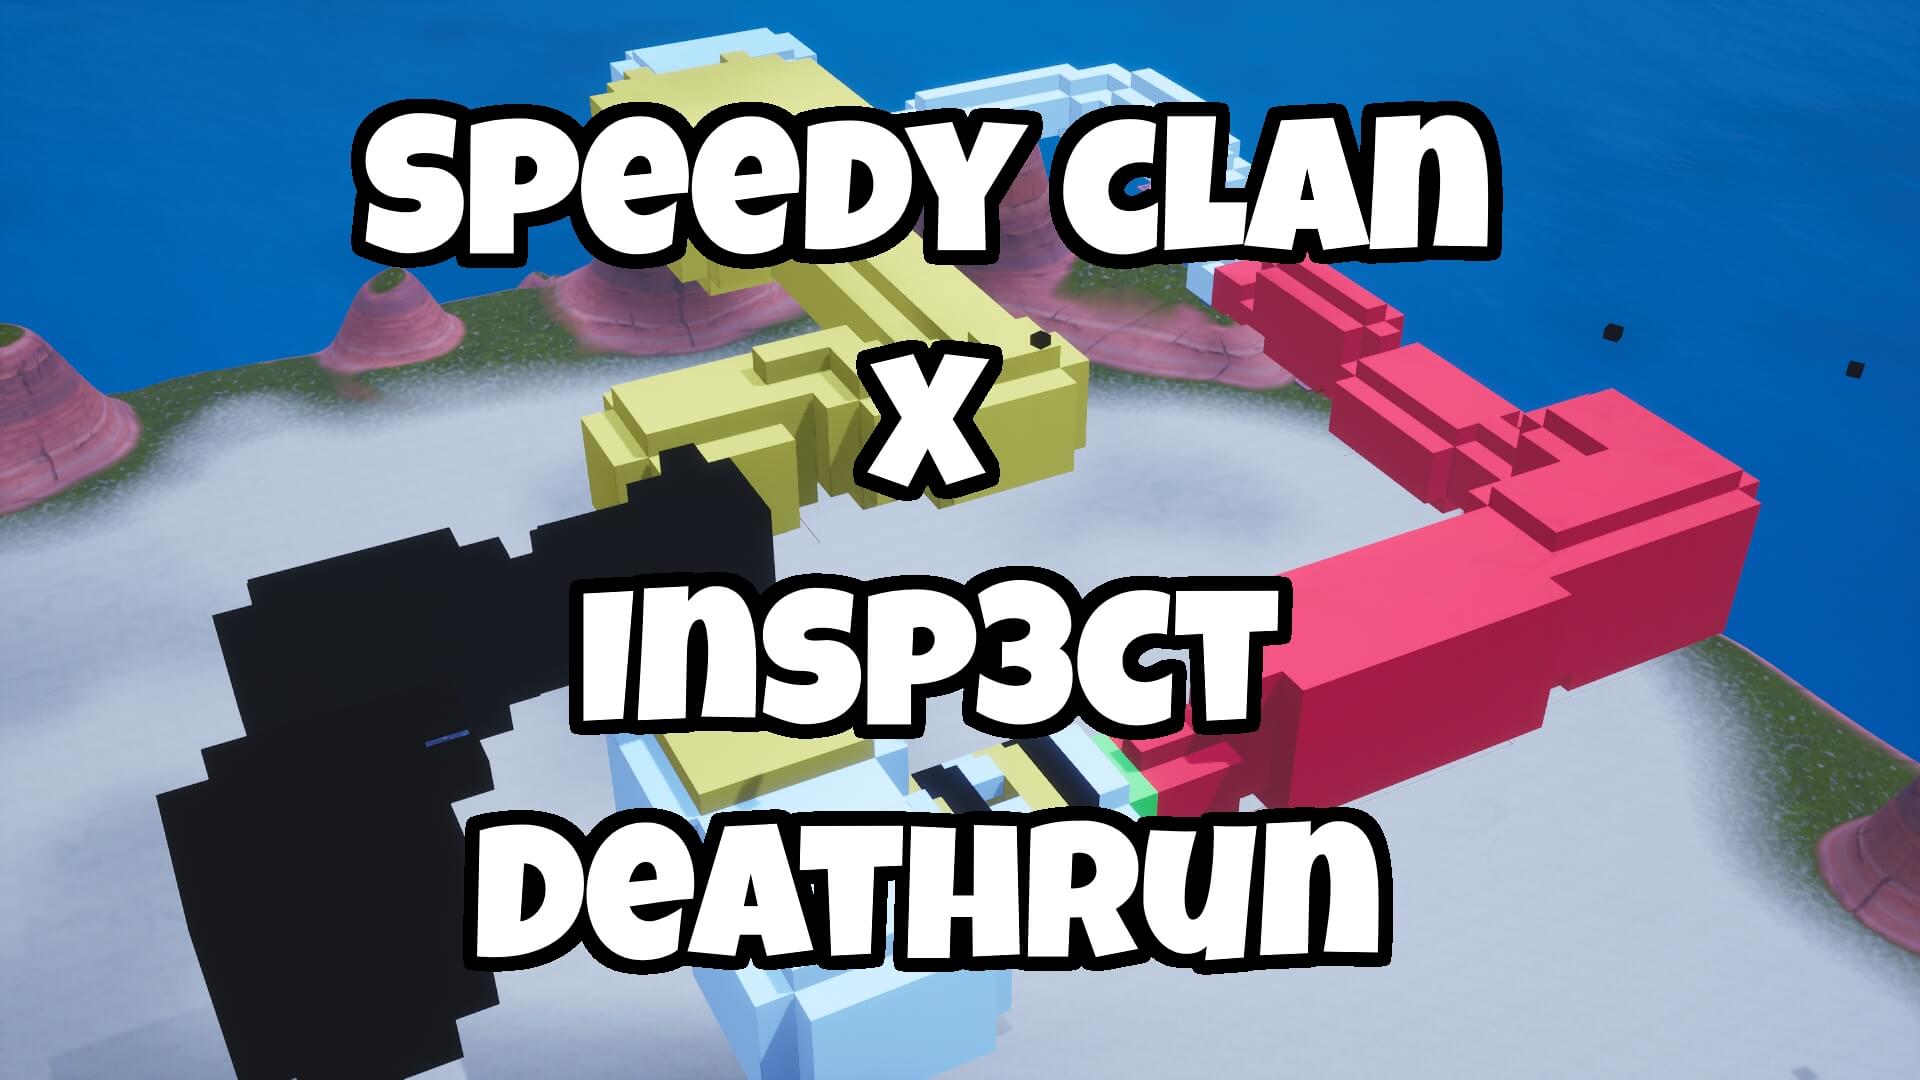 SPEEDY CLAN X INSP3CT DEATHRUN